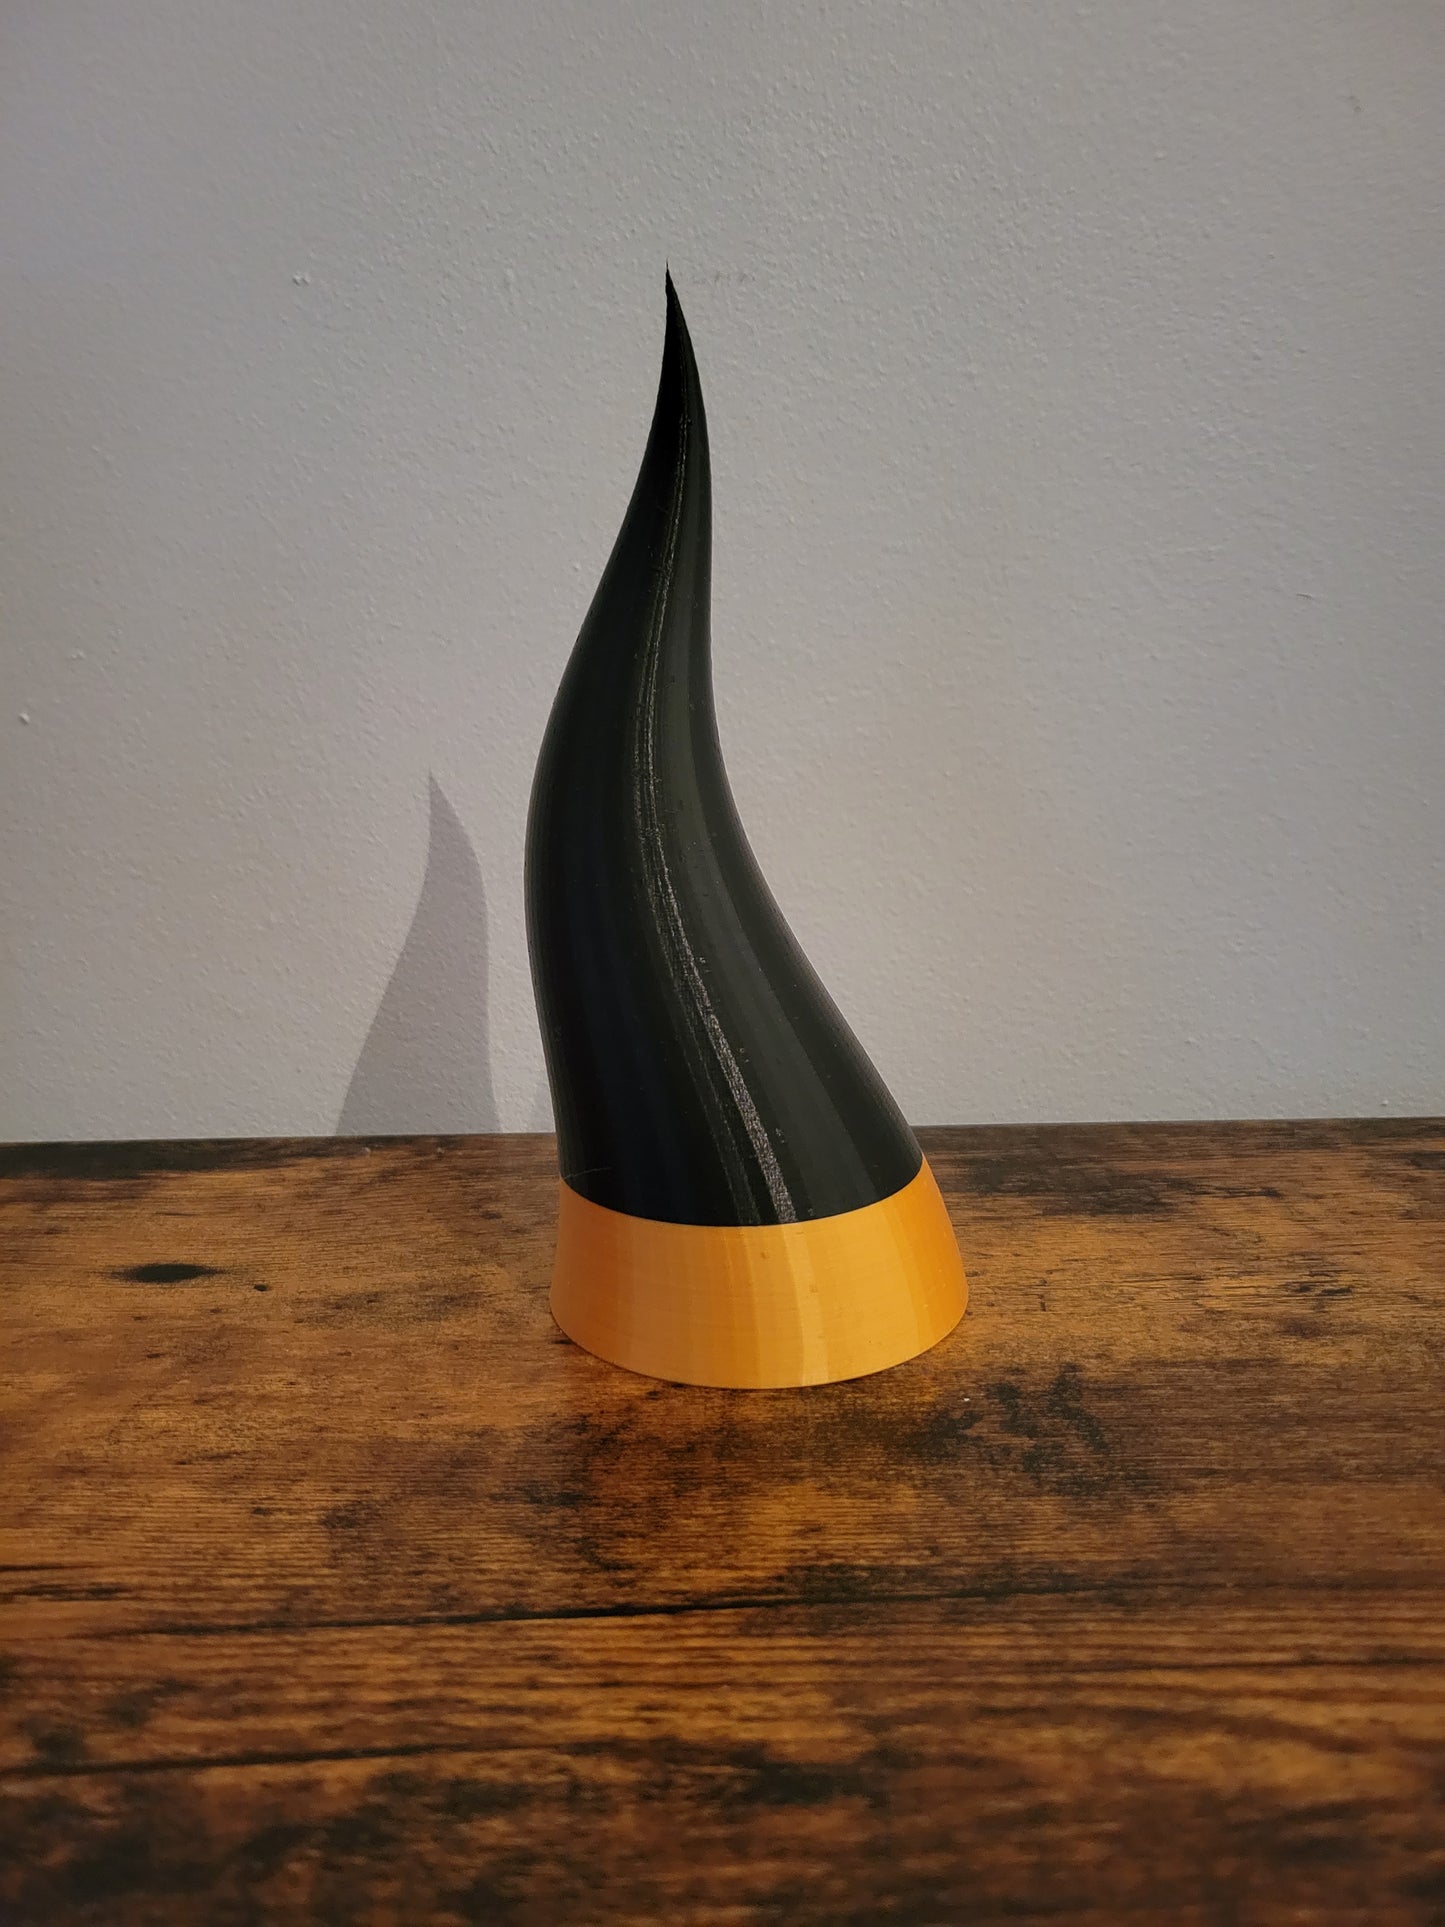 Cornicello Italian Horn Sculpture - 3D printed